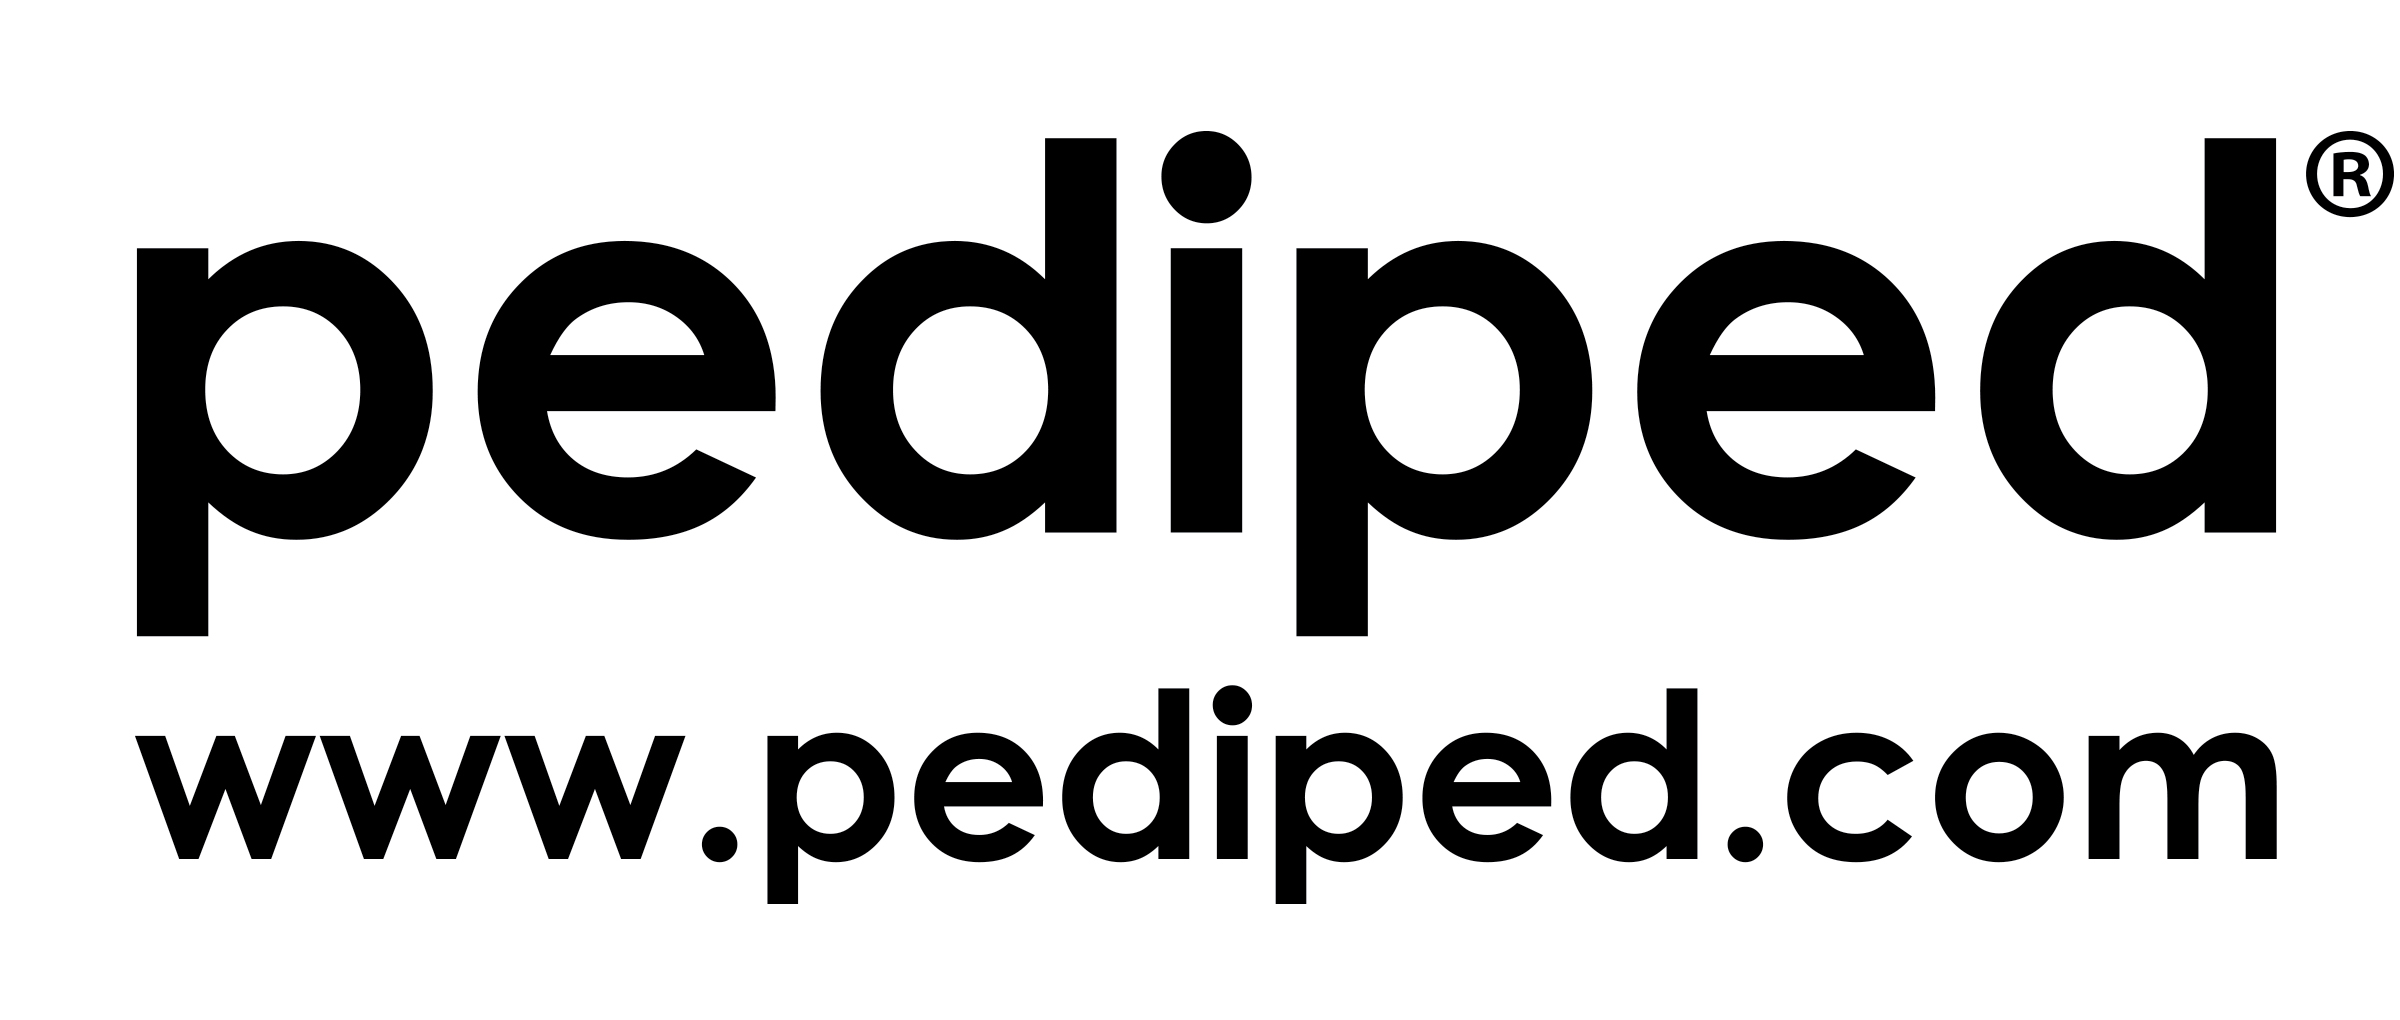 pediped Footwear logo